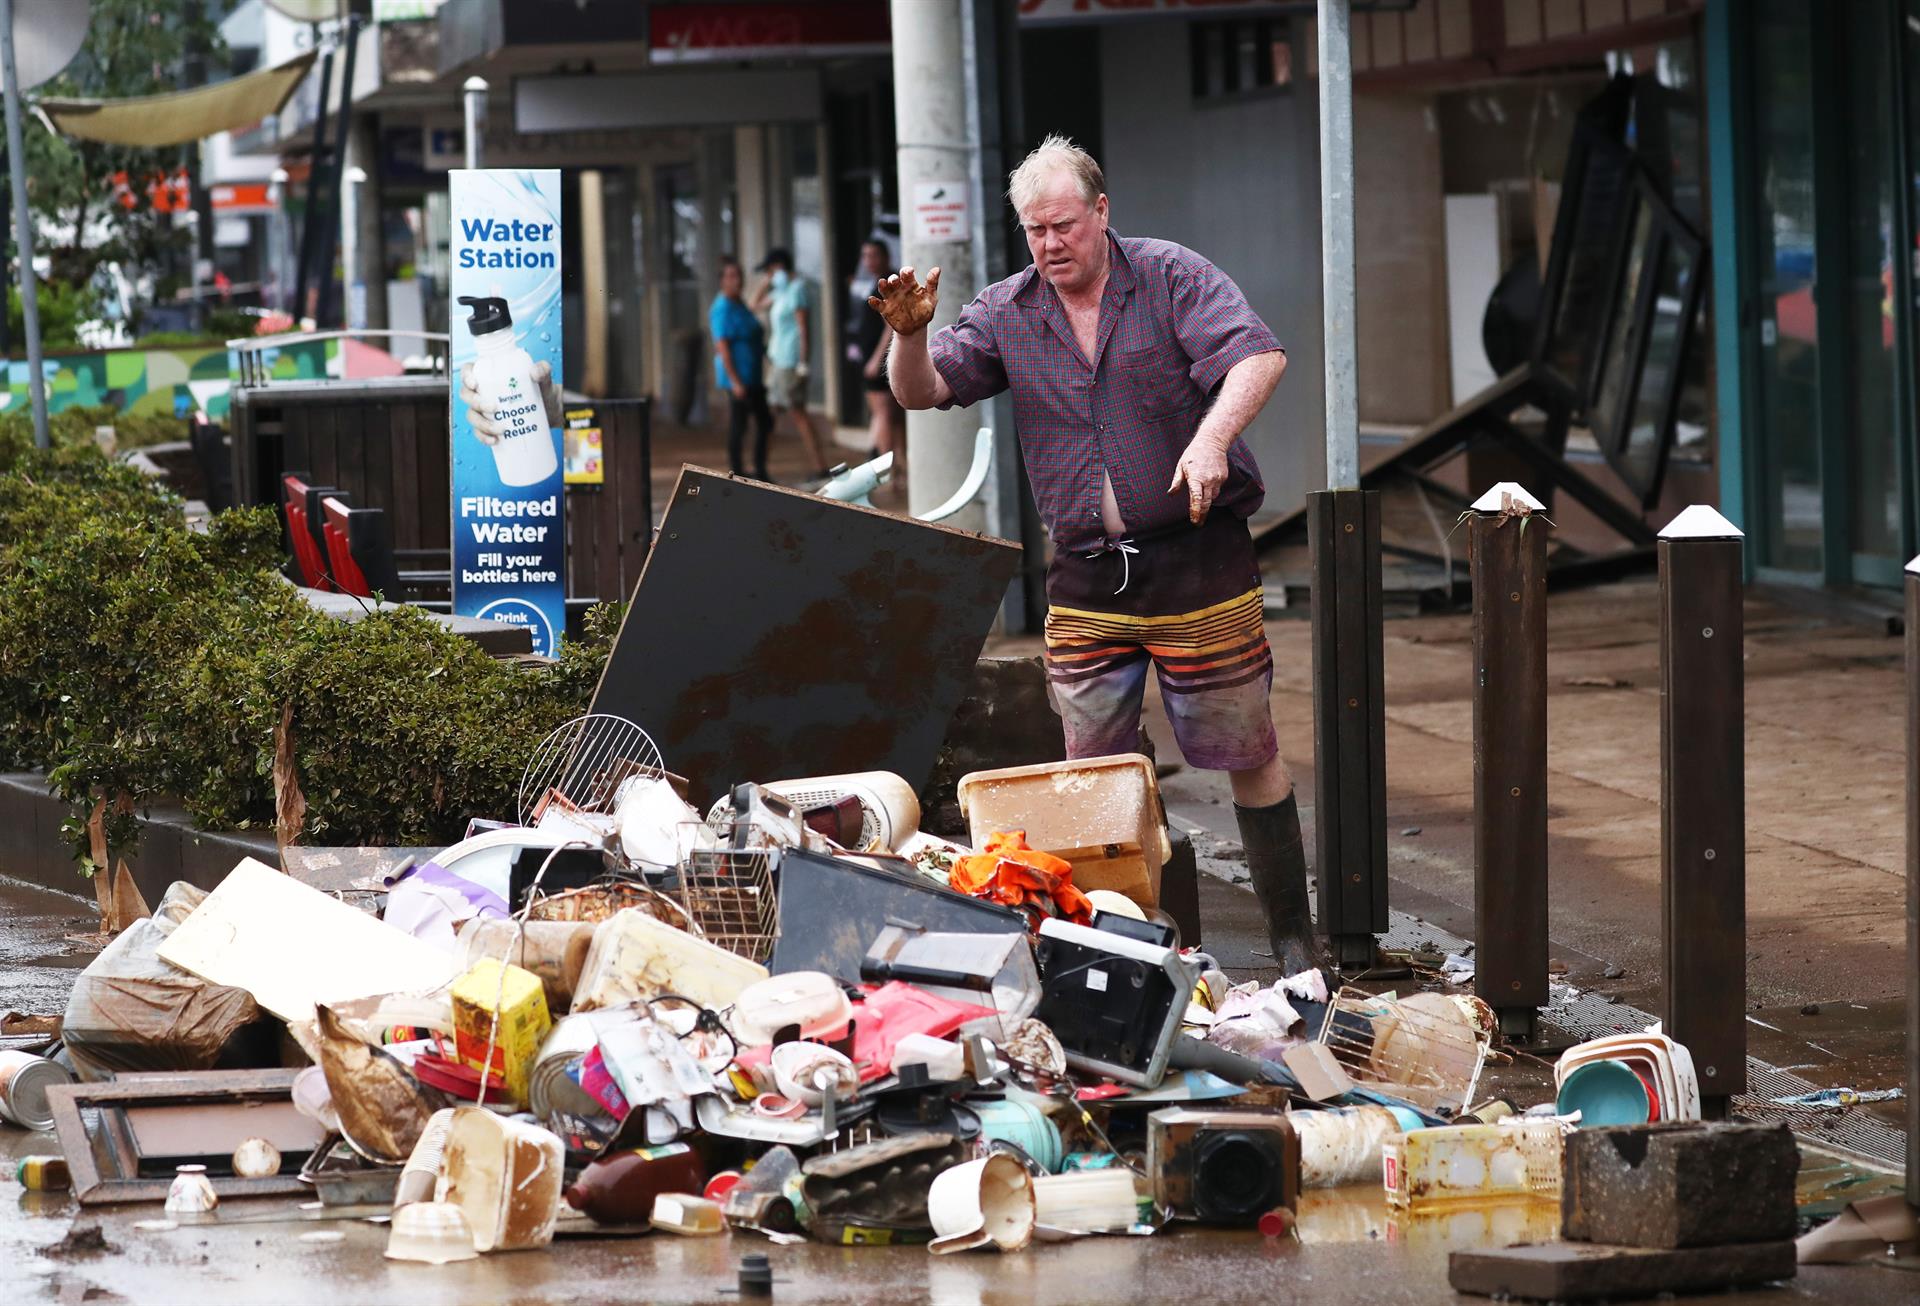 Limpieza después de las inundaciones en el distrito comercial central de Lismore, Australia, 2 de marzo de 2022 (EFE)